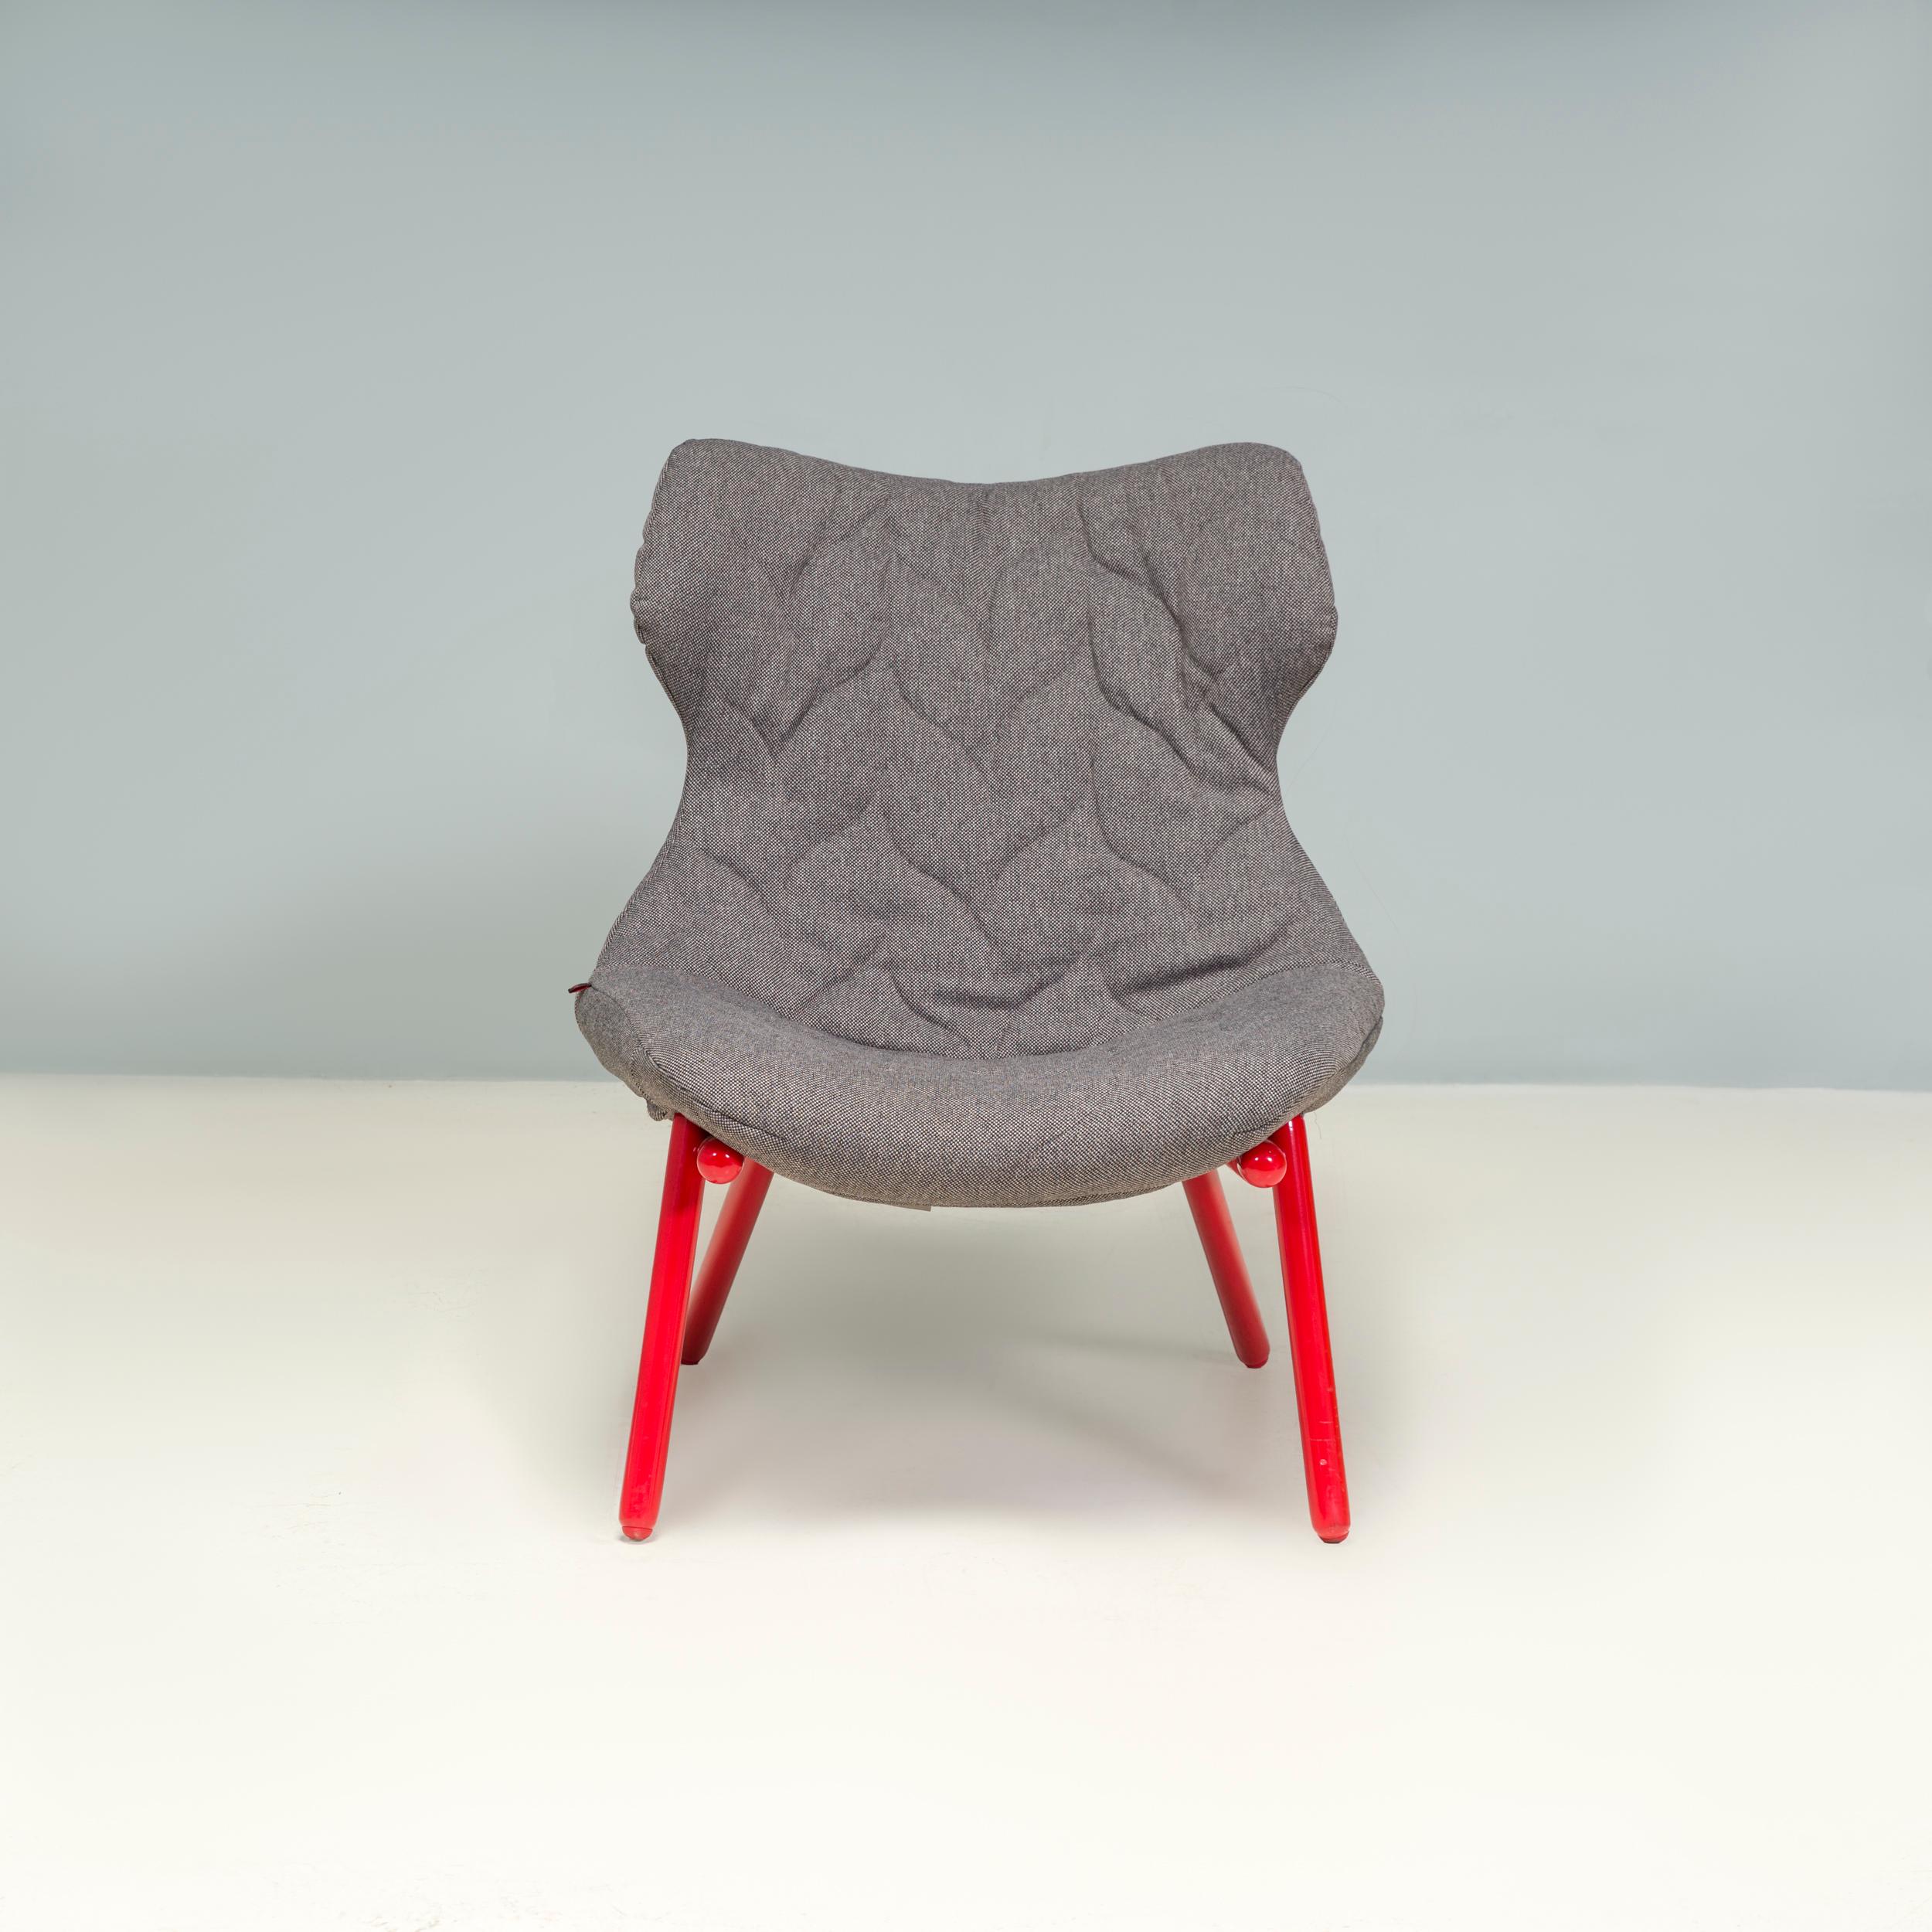 Der 2012 von Patricia Urquiola für Kartell entworfene Sessel Foliage ist von der Natur inspiriert und schafft ein perfektes Gleichgewicht zwischen dem natürlichen Wort und zeitgenössischem Möbeldesign.

Das Gestell aus Eisenrohr ist rot lackiert und